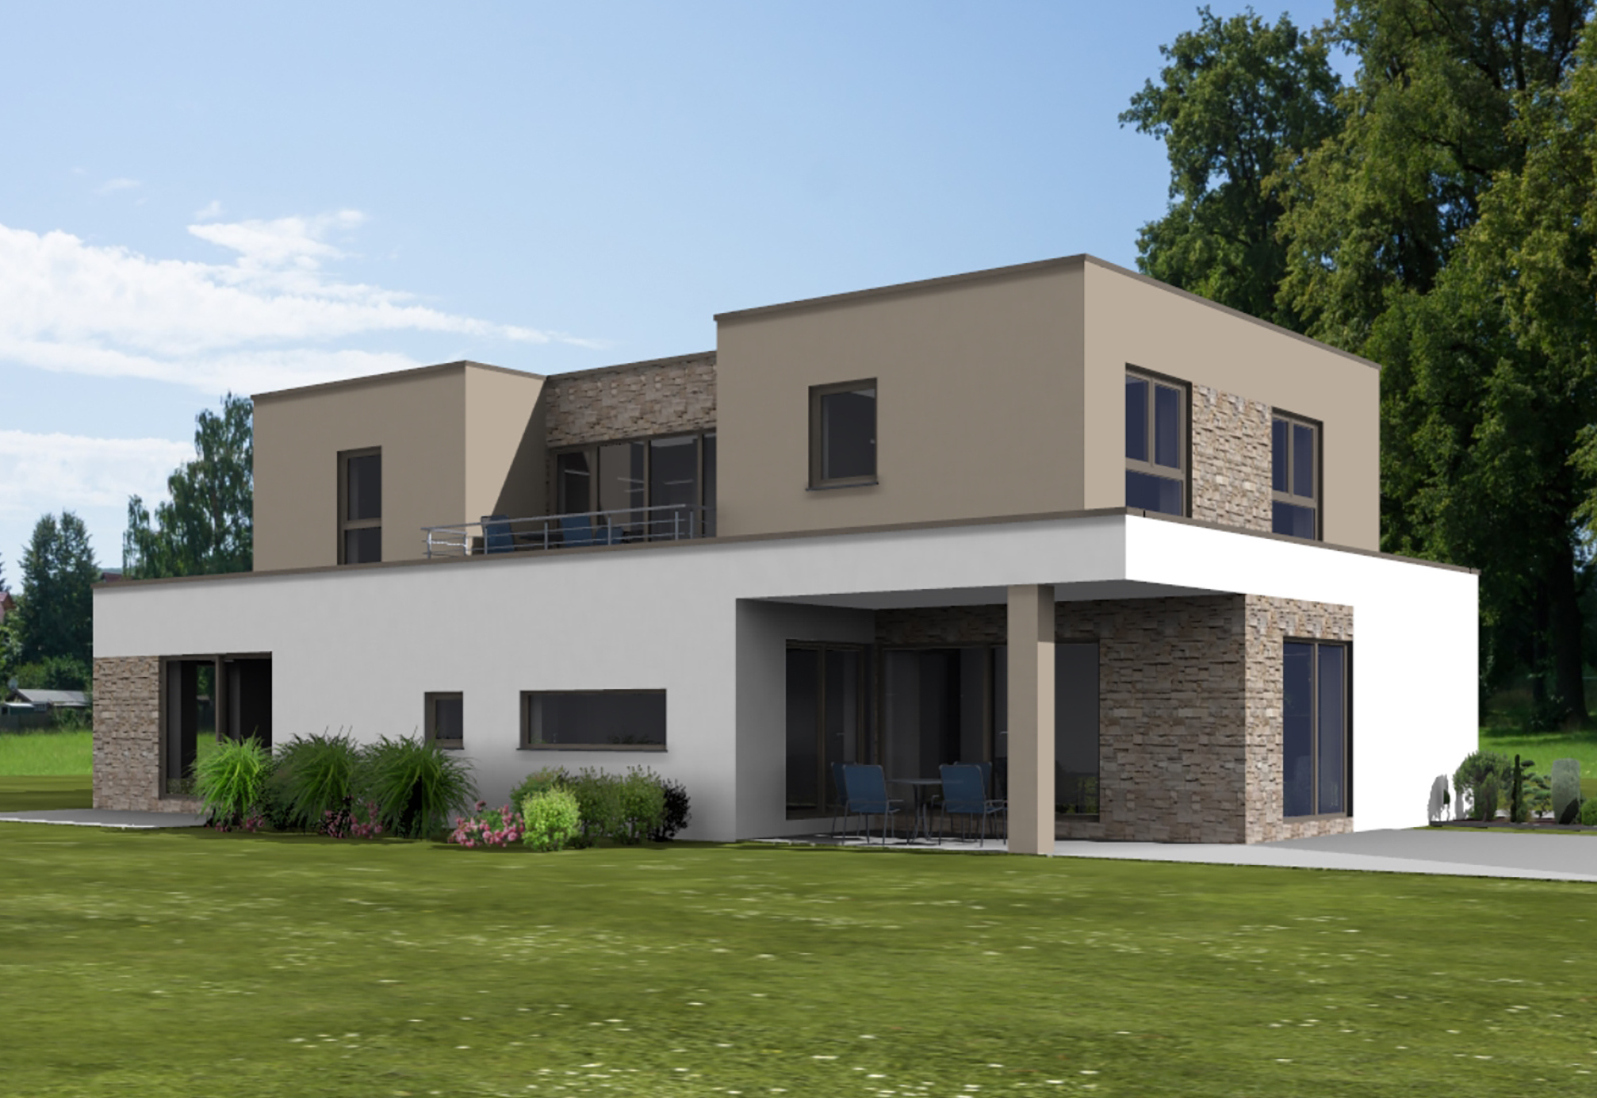 Artos Haus Bauvorhaben 2021 in Alfter. Einfamilienhaus mit Einliegerwohnung und Garage